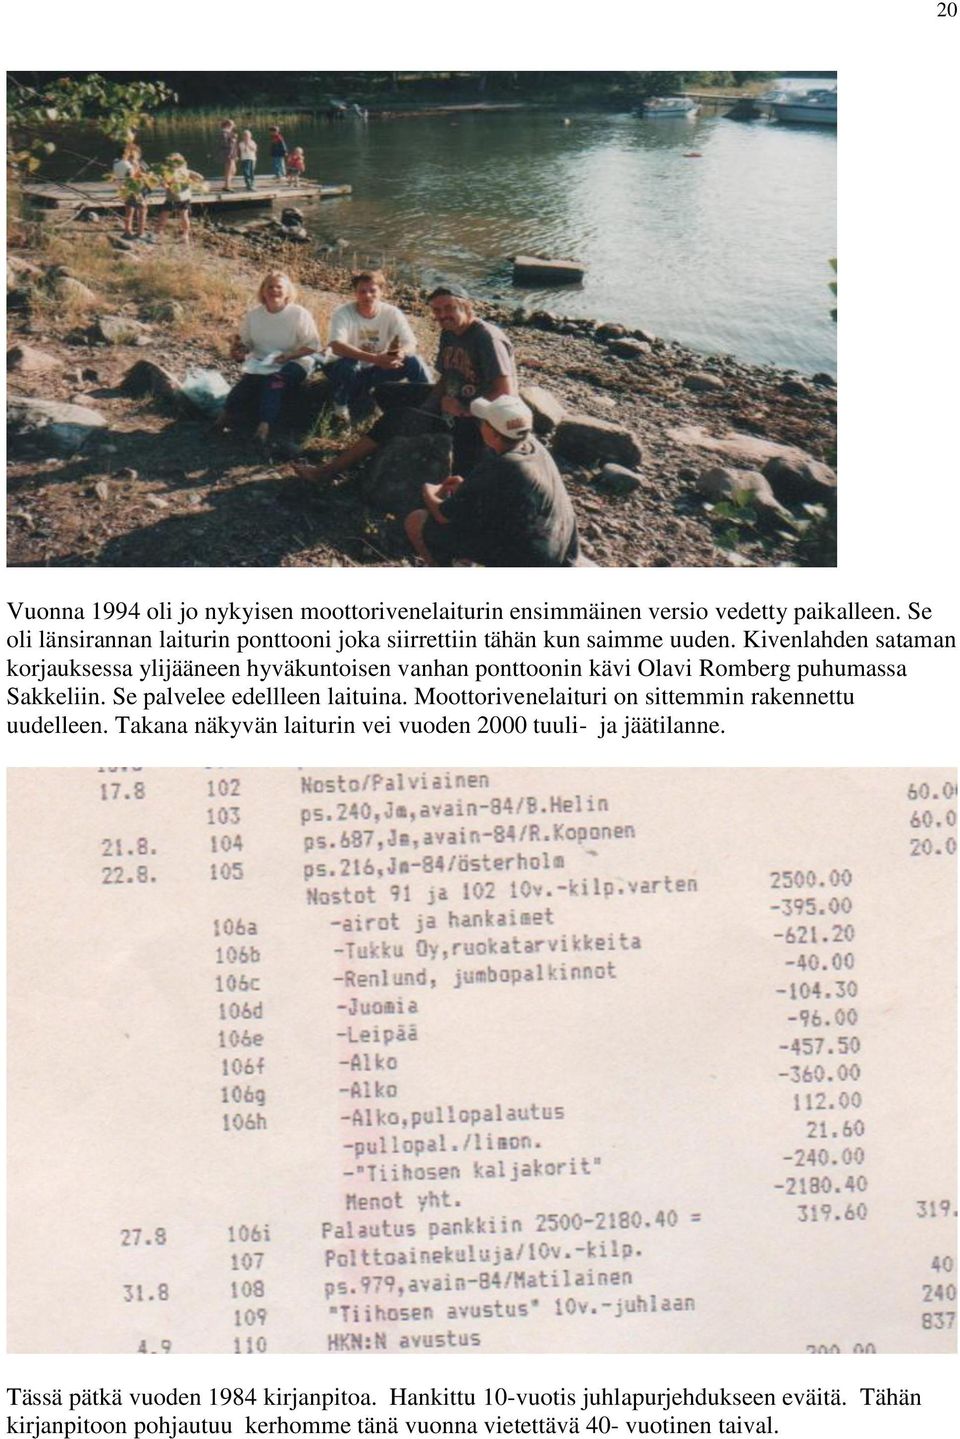 Kivenlahden sataman korjauksessa ylijääneen hyväkuntoisen vanhan ponttoonin kävi Olavi Romberg puhumassa Sakkeliin. Se palvelee edellleen laituina.